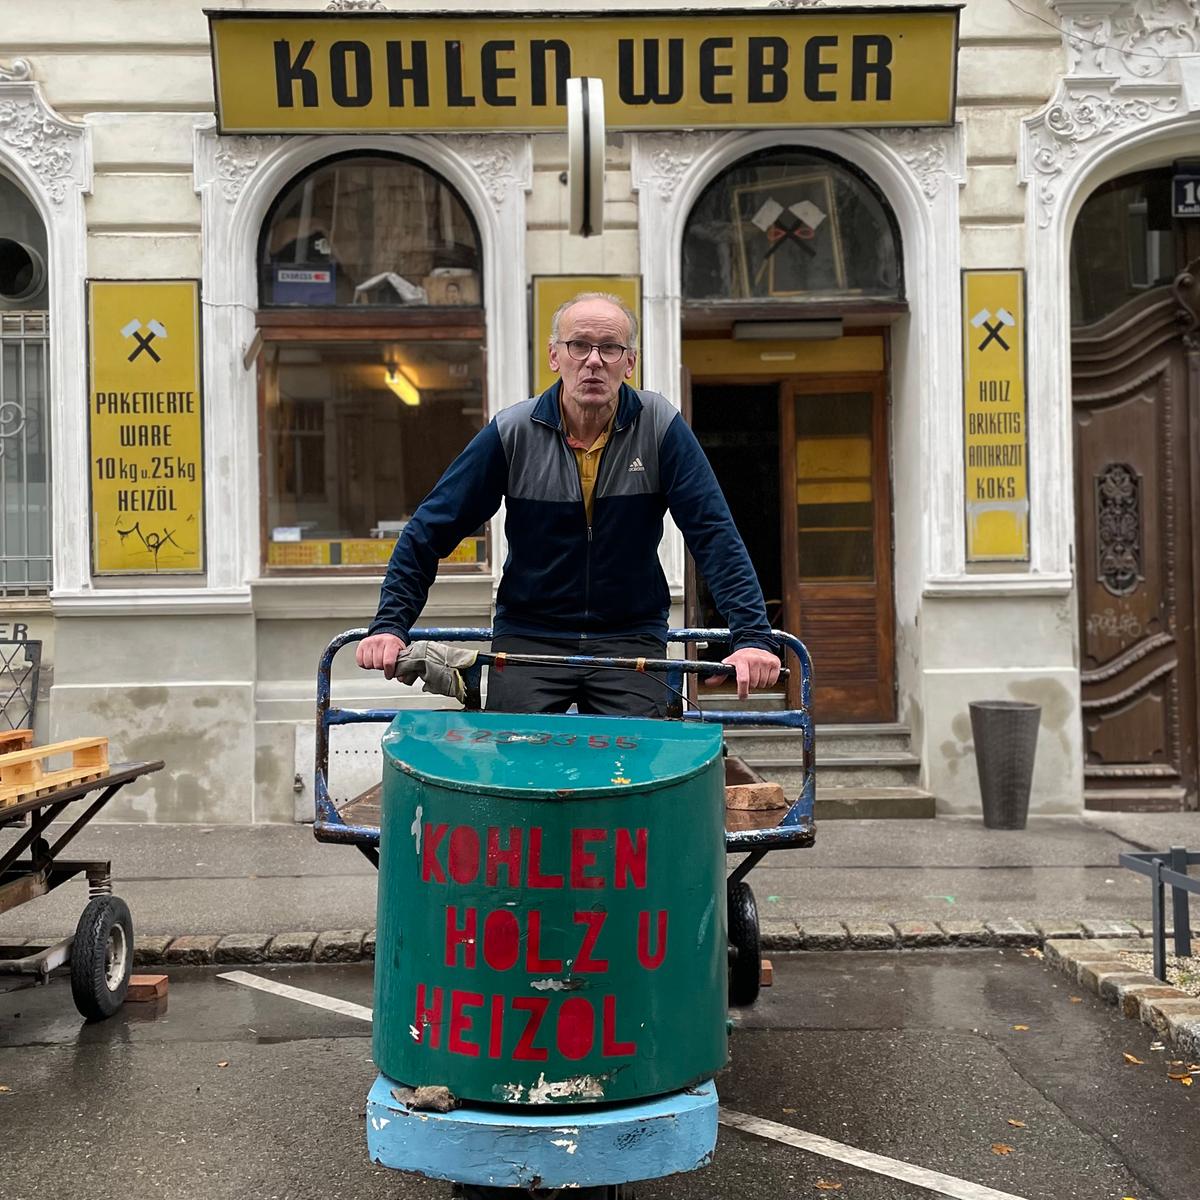 Peter Hinterhoger ist einer der letzten Kohlenhändler in Wien. Er steht mit einem Lastenfahrzeug vor seinem Geschäft. Als Aufdruck ist zu lesen: Kohlen, Holz und Heizöl. Mittlerweile verkauft er mehr Holz als Kohle.